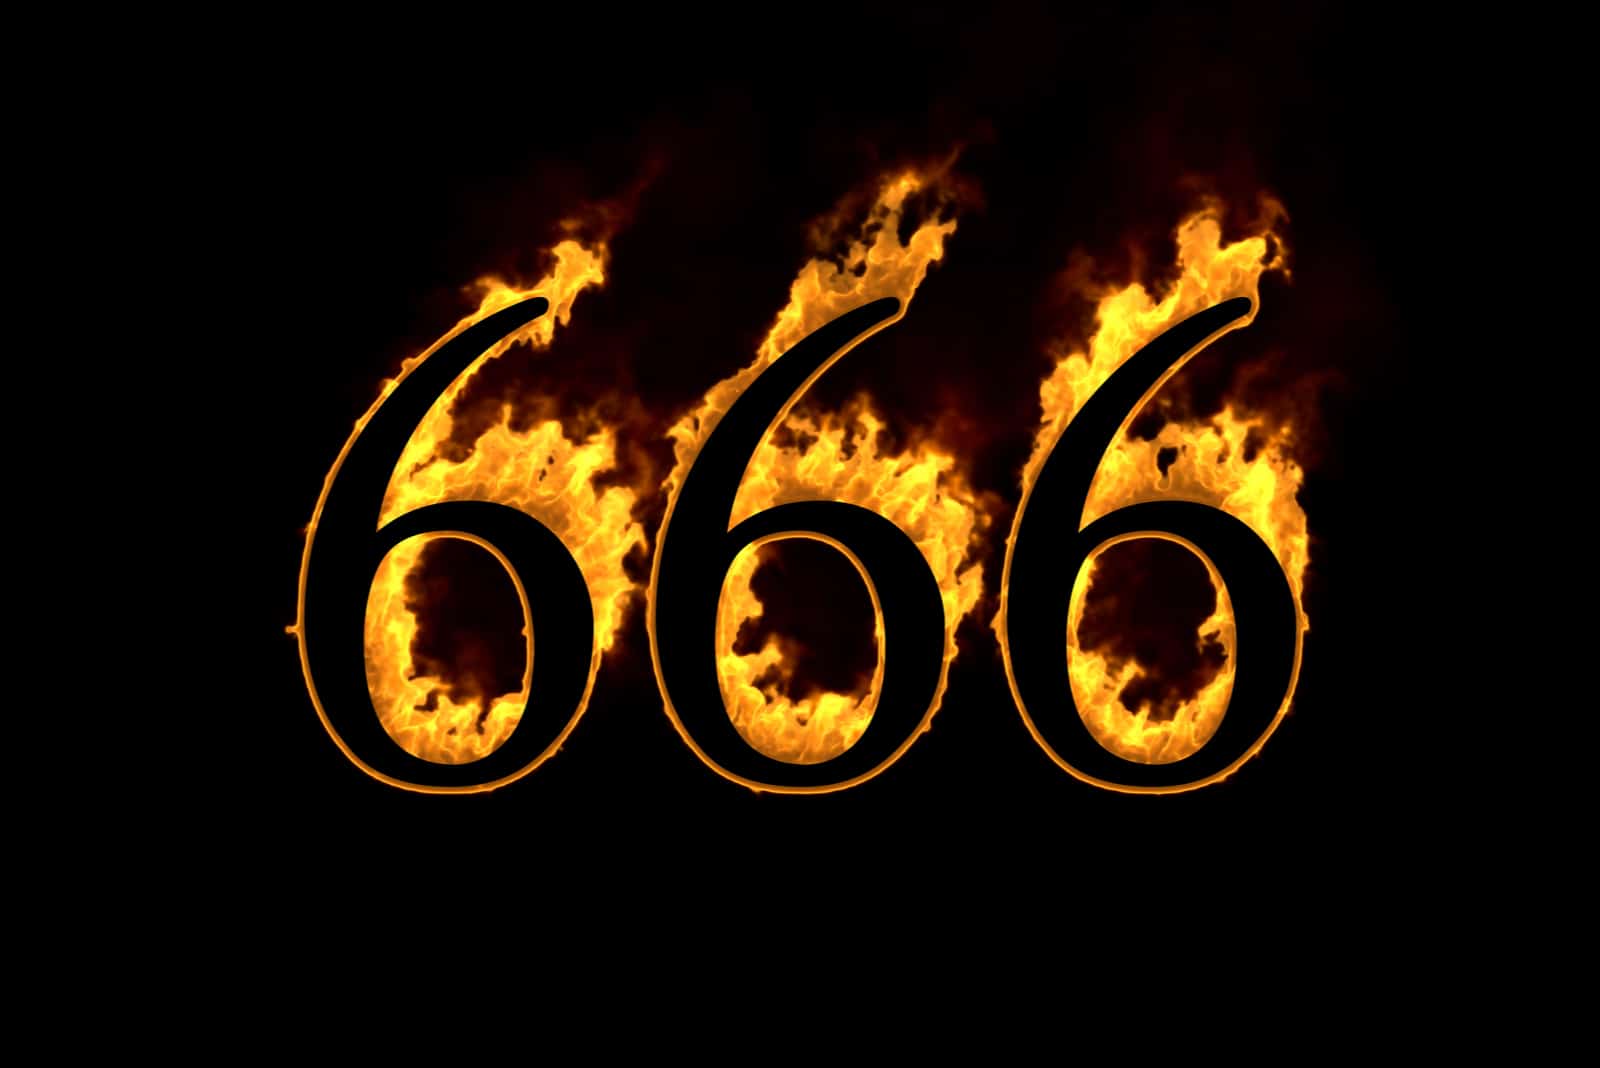 Bedeutung 666 engel